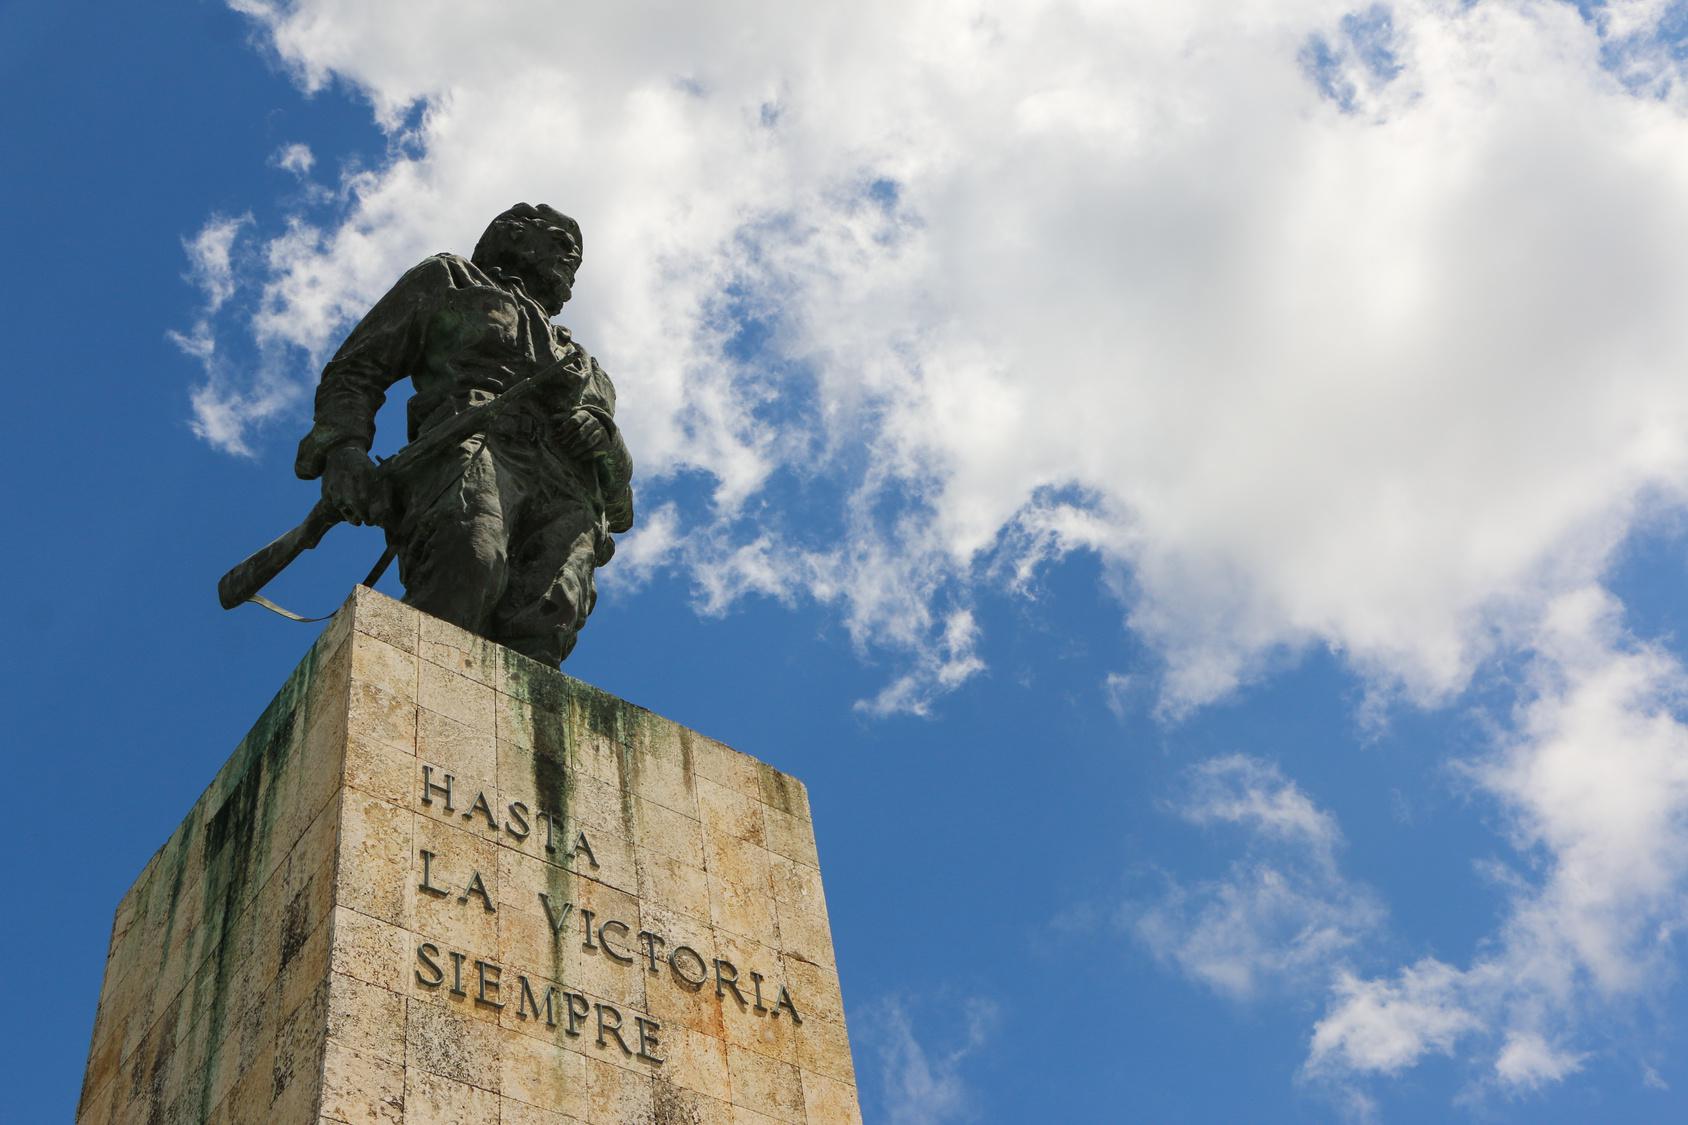 Cuba e la revolucion/la storia - Tanti i luoghi di interesse da L’Avana a Santiago de Cuba, passando ovviamente per Santa Clara: la città simbolo di Che Guevara, dove è possibile vedere la sua statua e visitare il museo-memoriale e il monumento al “Tren Blindado”.